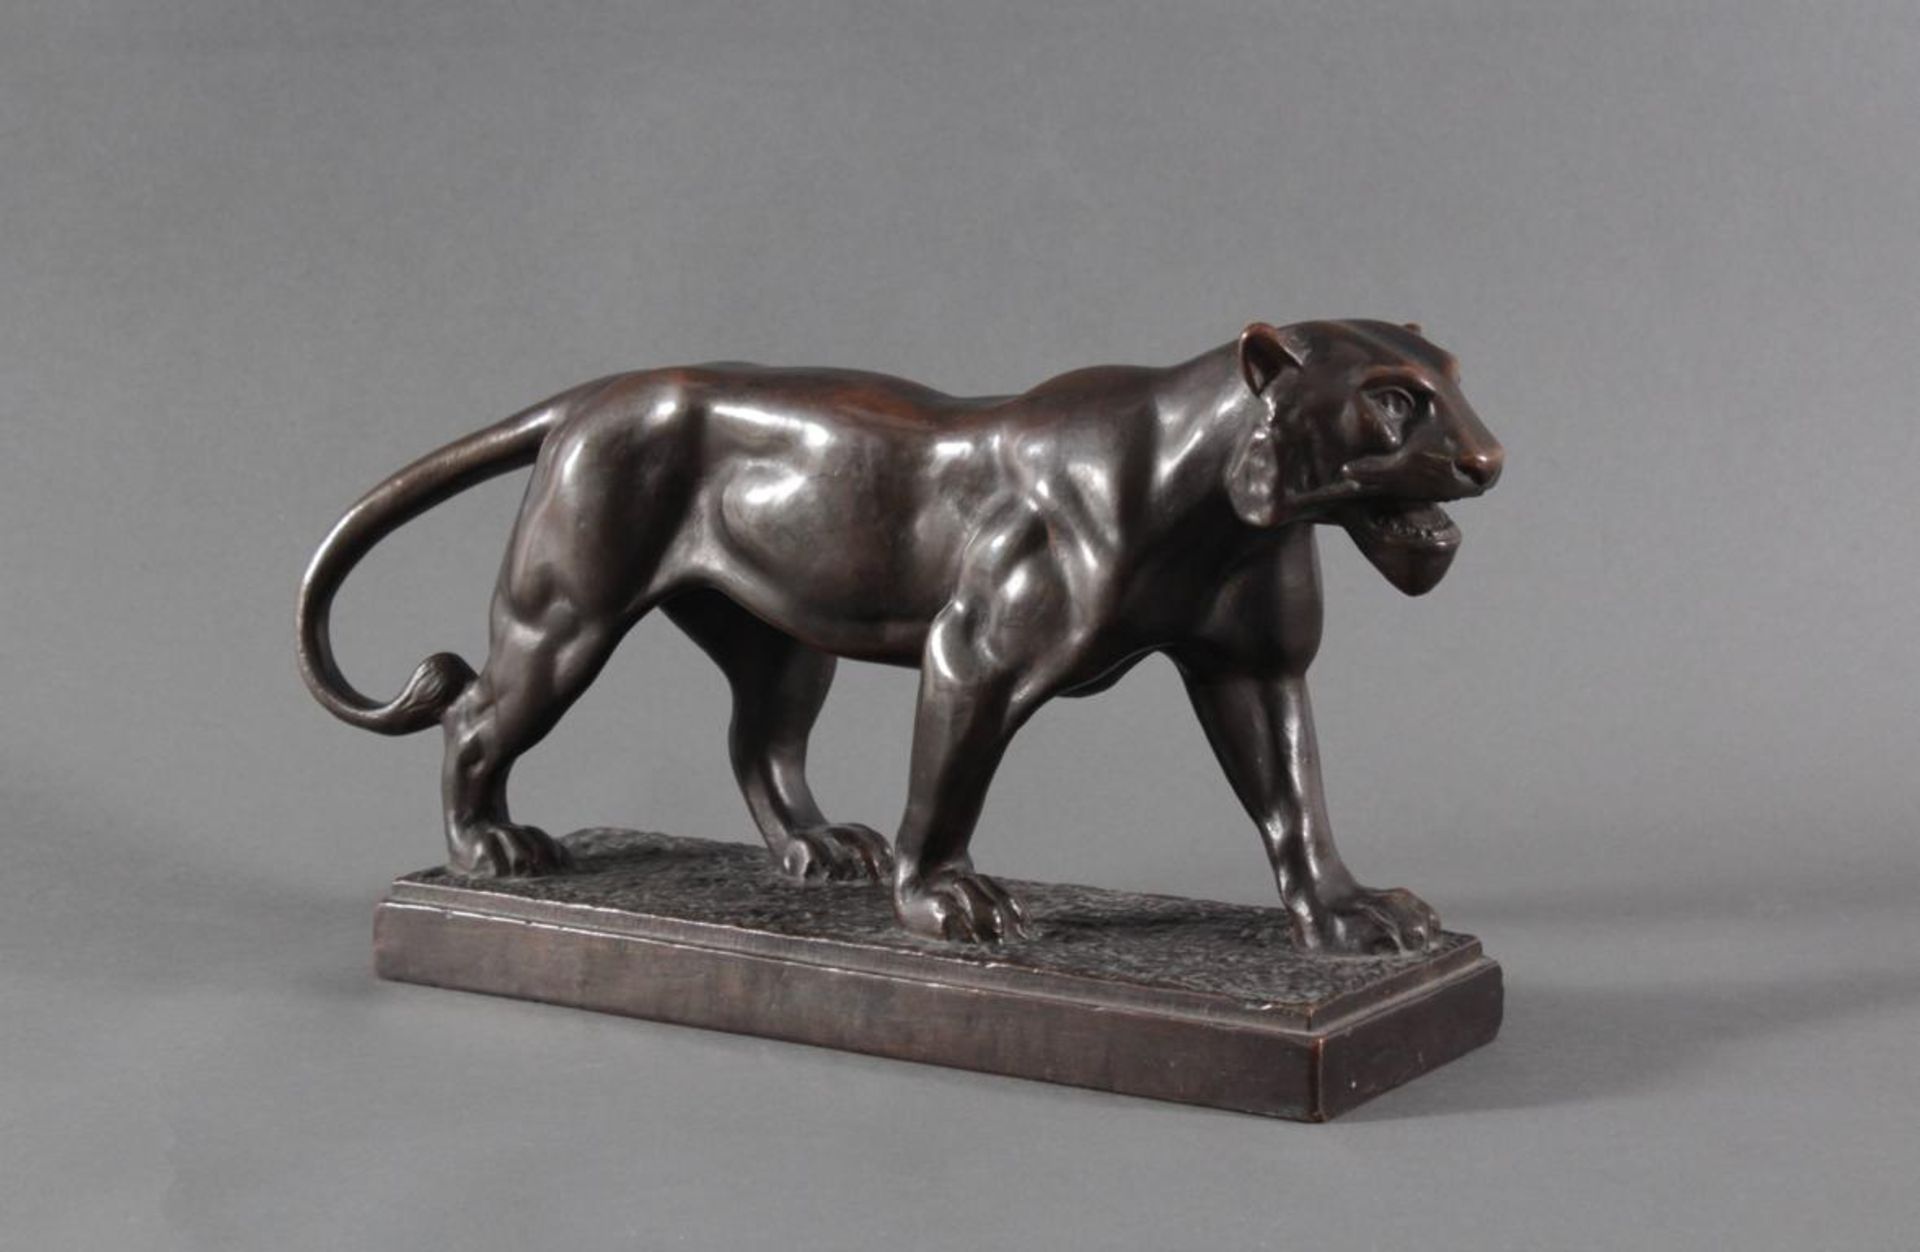 Skulptur einer Löwin aus Kupfer 1. Hälfte 20. JahrhundertPlastisch gestaltete Skulptur einer